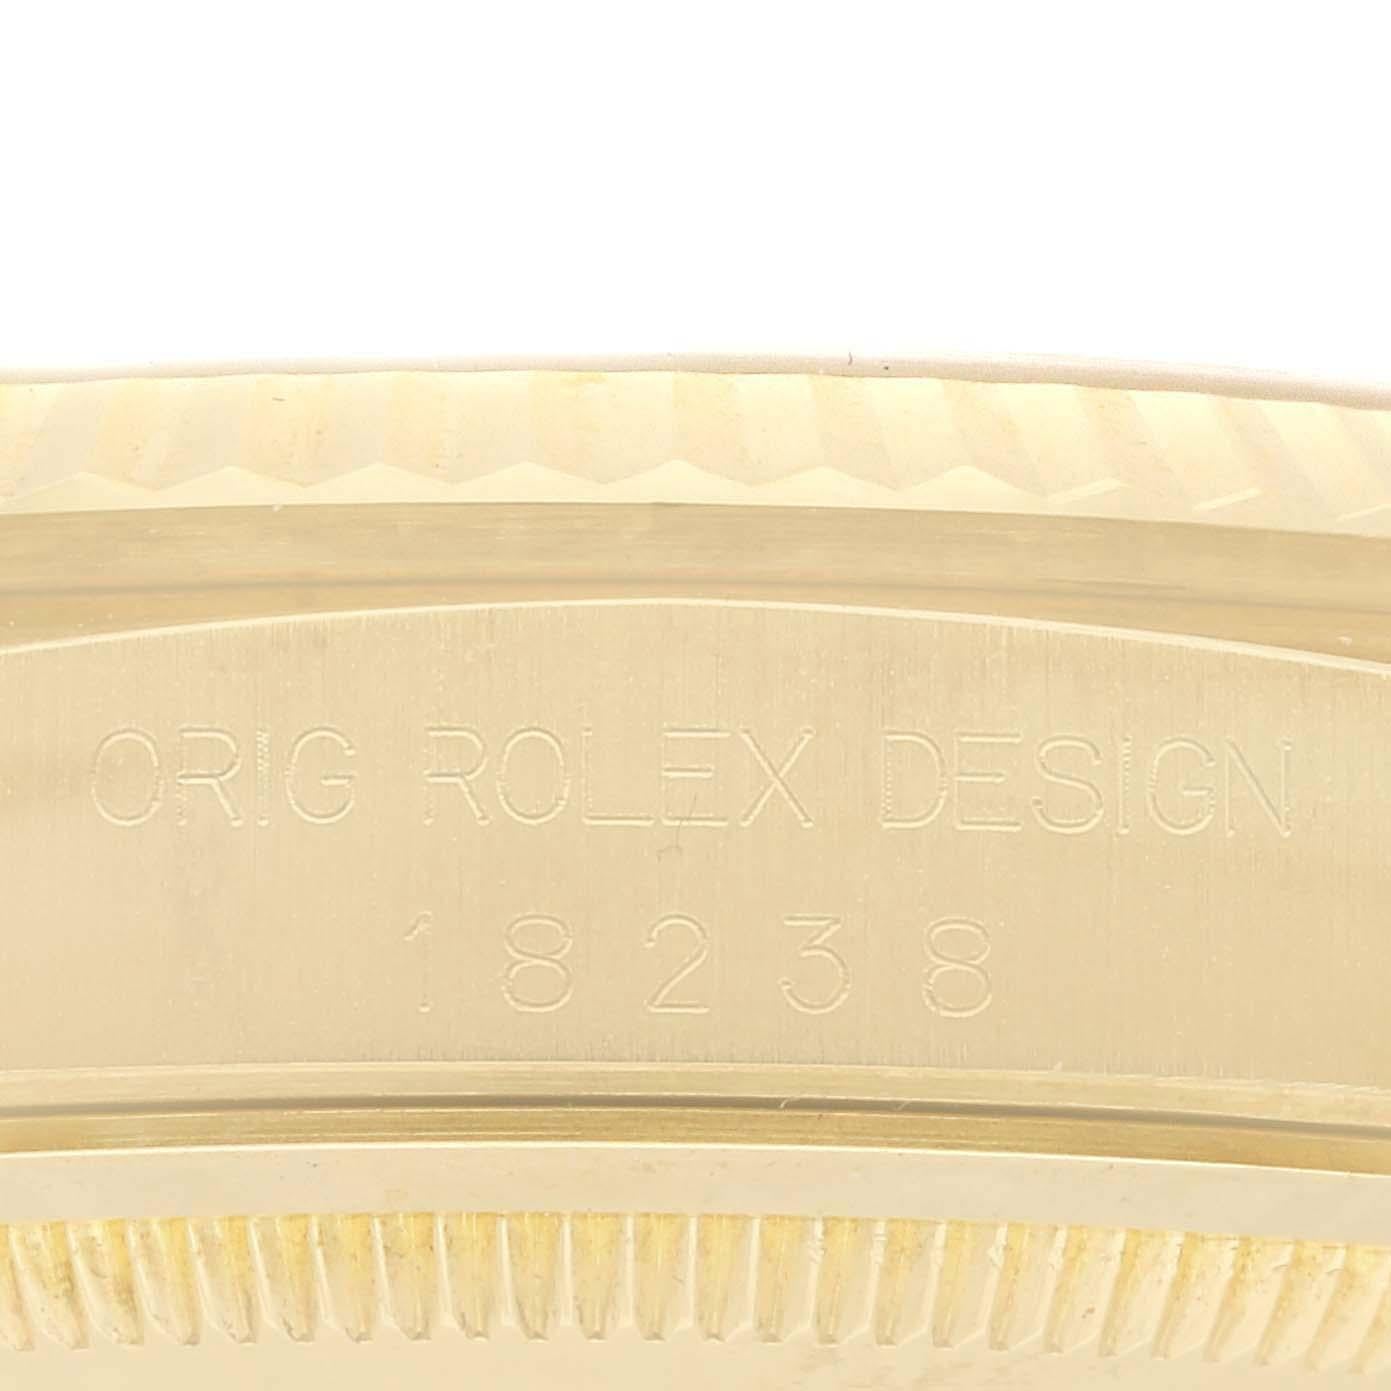 Rolex President Day-Date Montre Homme Or Jaune Champagne Cadran Diamants 18238. Mouvement à remontage automatique certifié chronomètre. Boîtier en or jaune 18 carats d'un diamètre de 36,0 mm. Logo Rolex sur la couronne. Lunette cannelée en or jaune